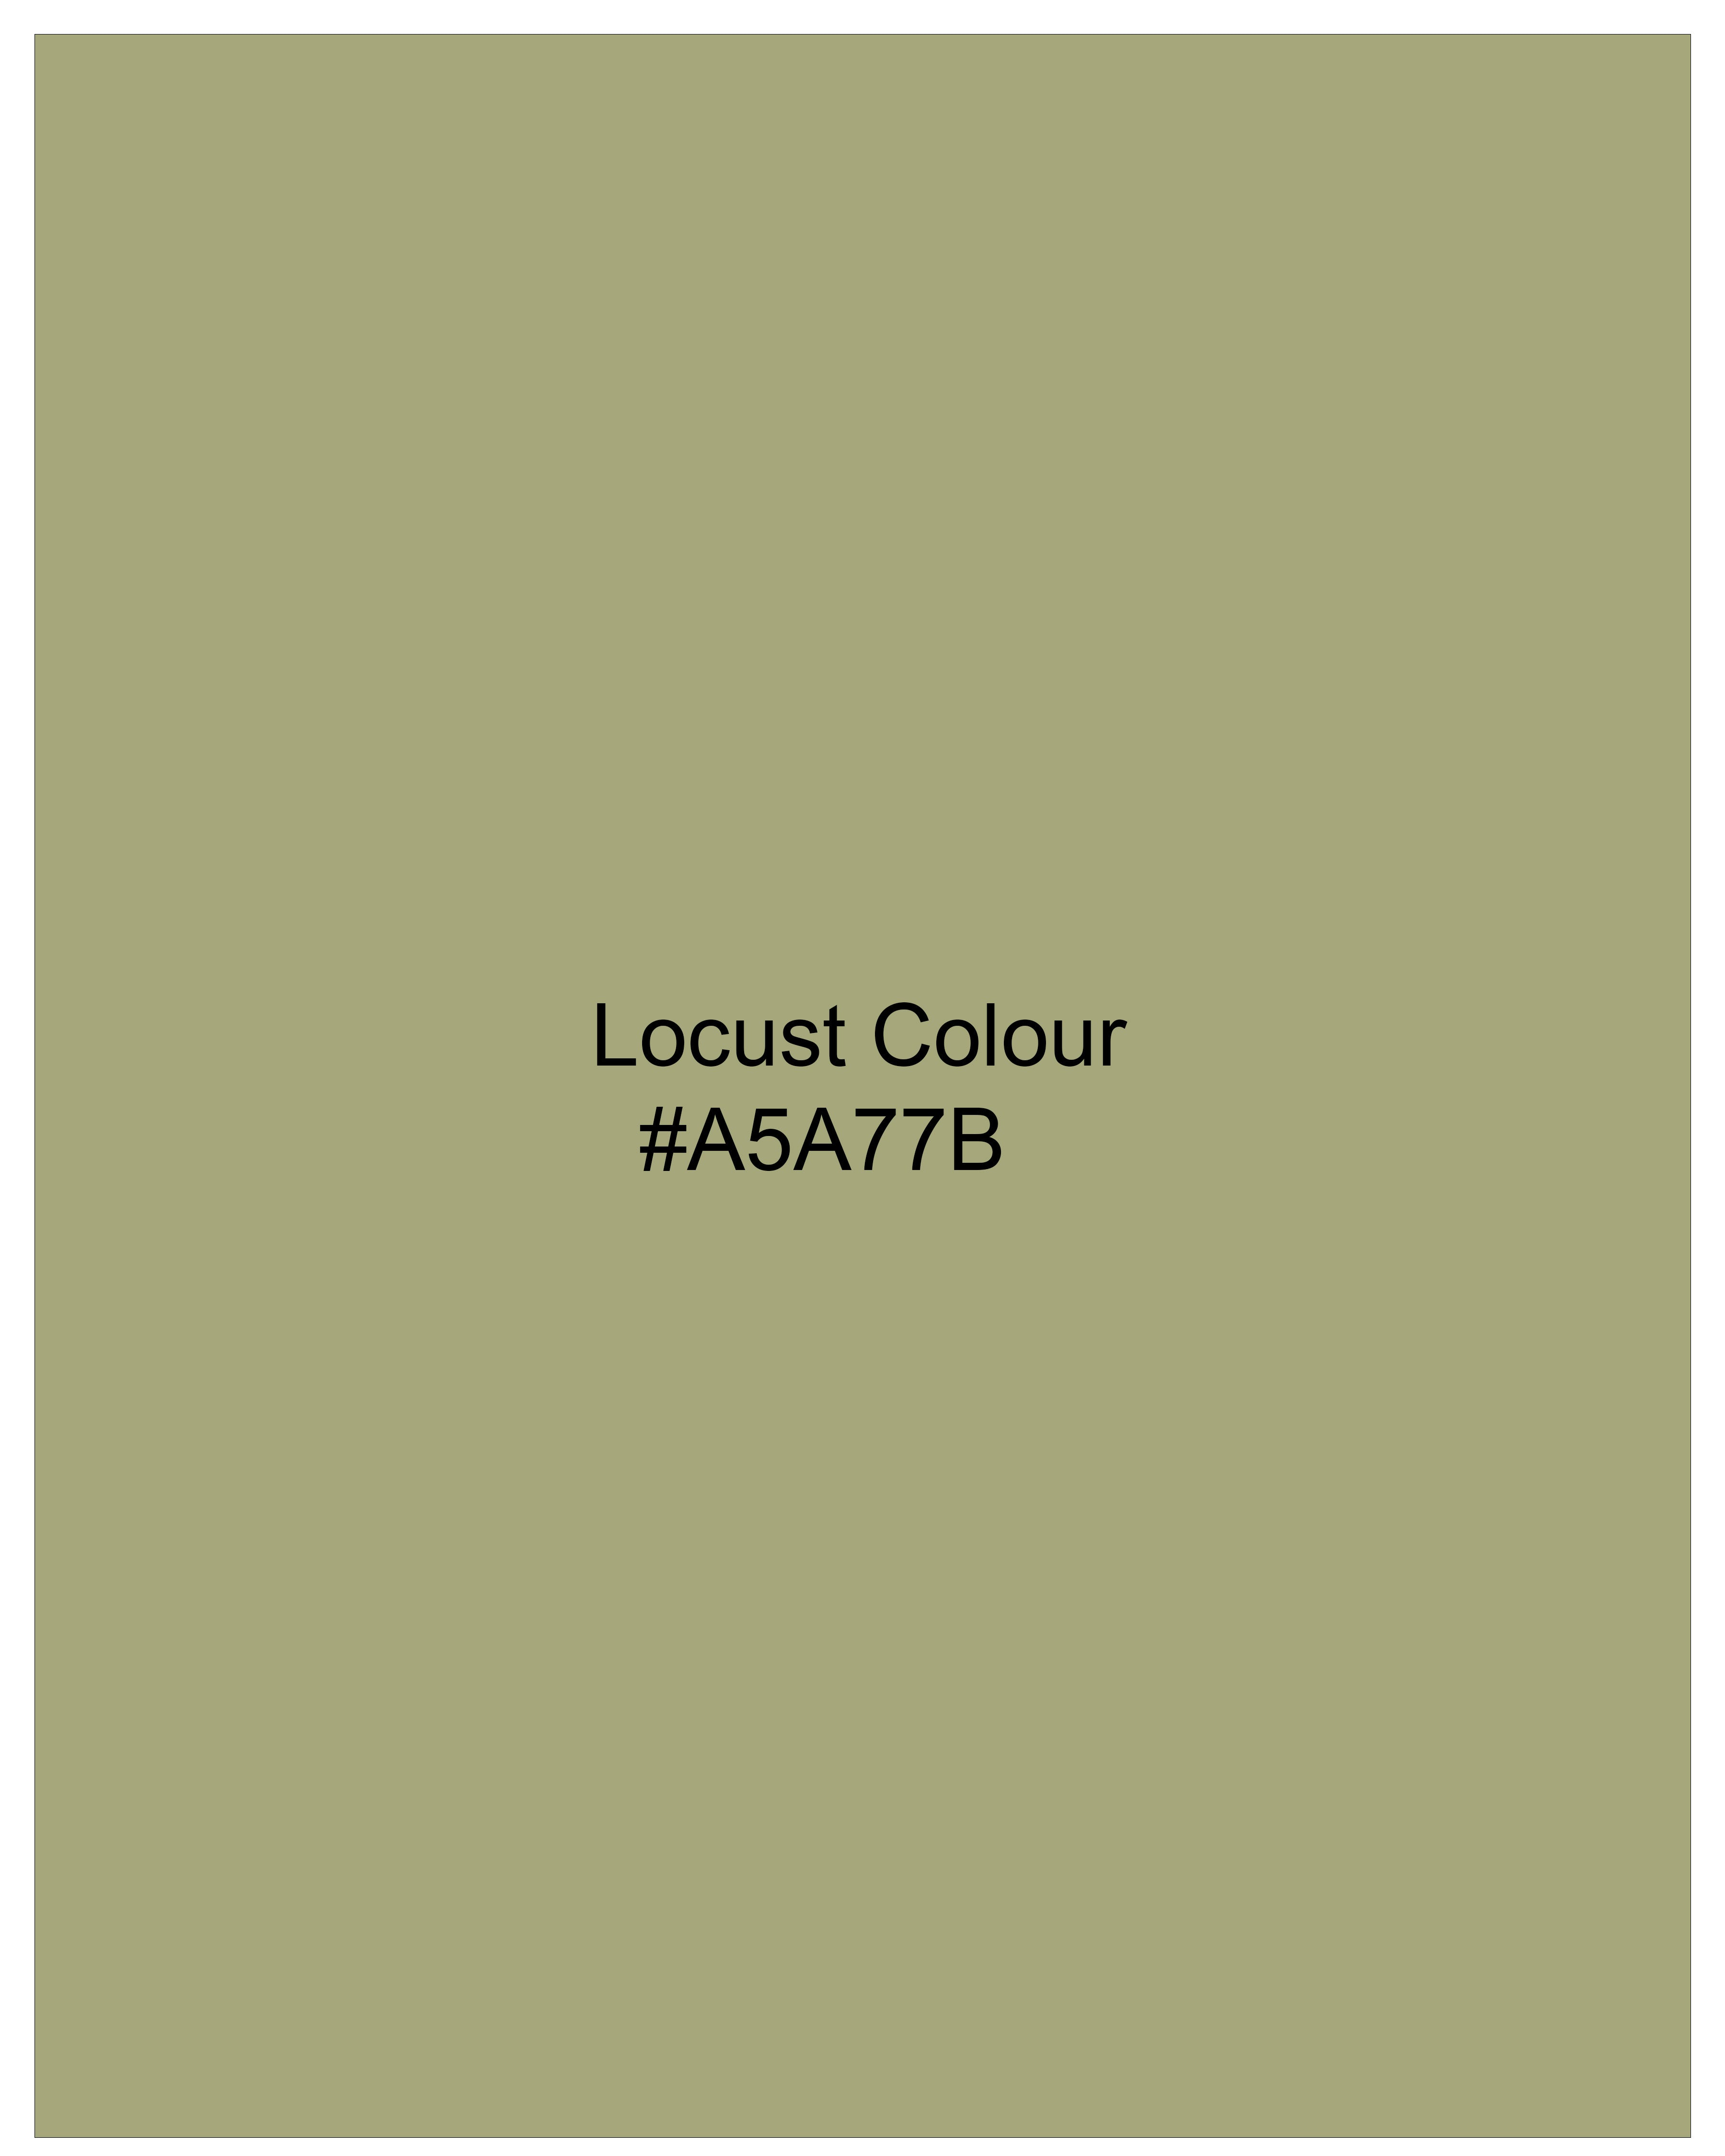 Locust Green Stretchable Denim Shorts SR182-28, SR182-30, SR182-32, SR182-34, SR182-36, SR182-38, SR182-40, SR182-42, SR182-44